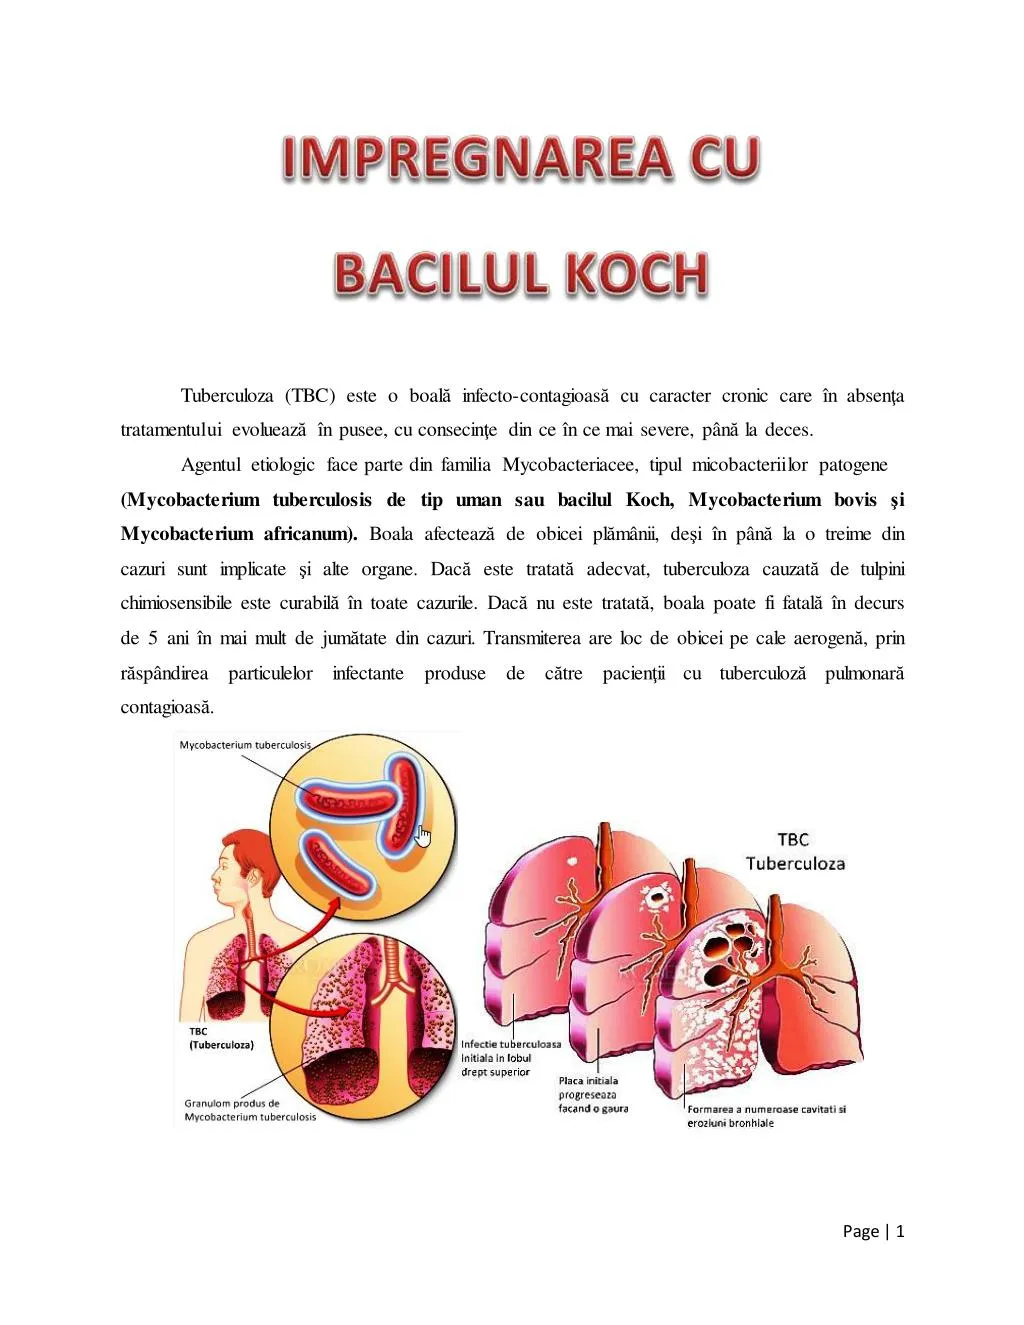 tuberculoza tbc este o boal infecto contagioas